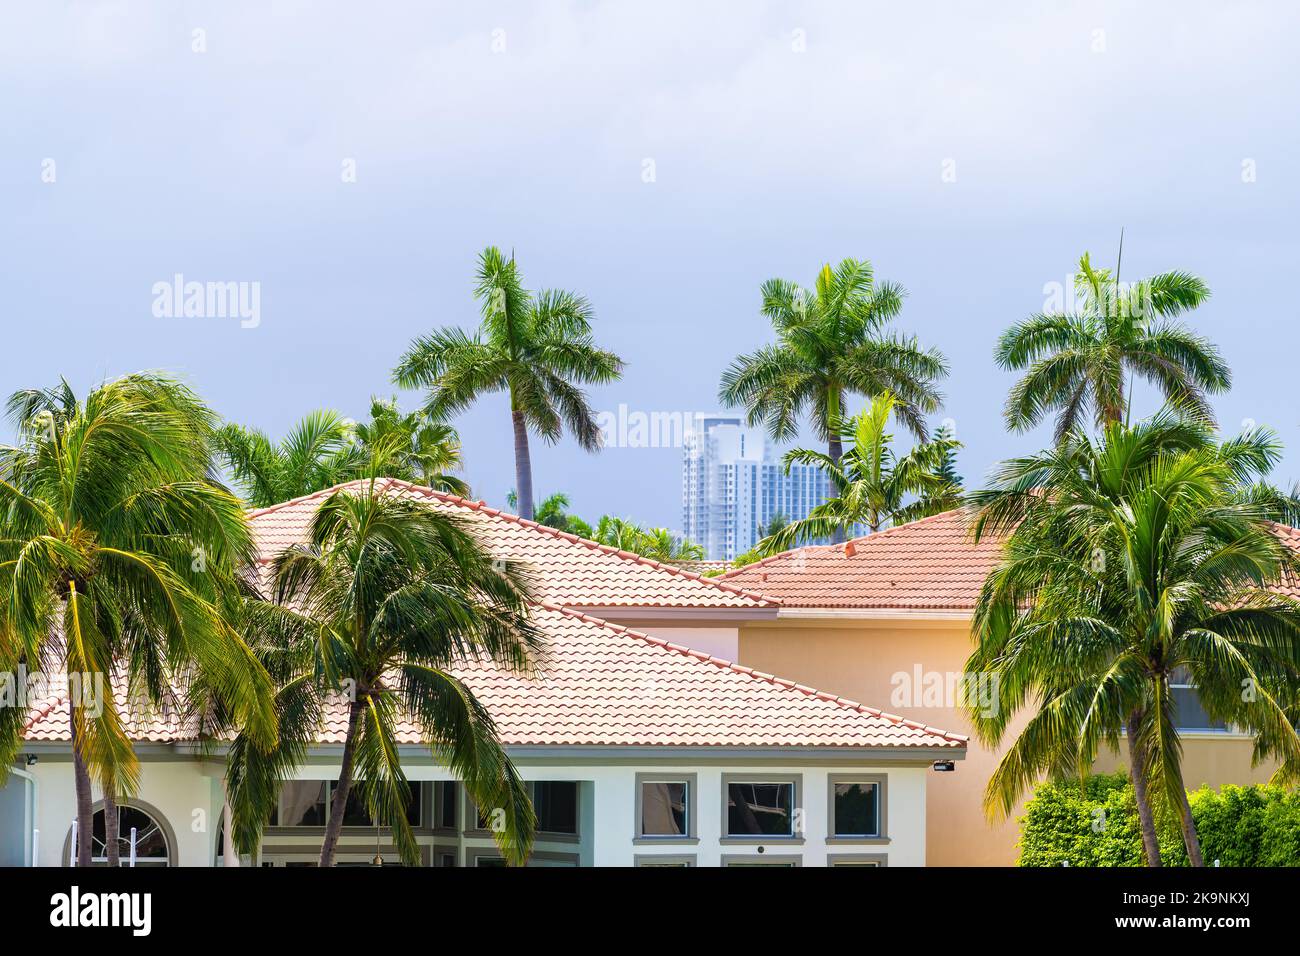 Miami, Florida proprietà immobiliare moderno palazzo di lusso villa casa a Hollywood da Hallandale spiaggia tre isole con palme il giorno d'estate Foto Stock